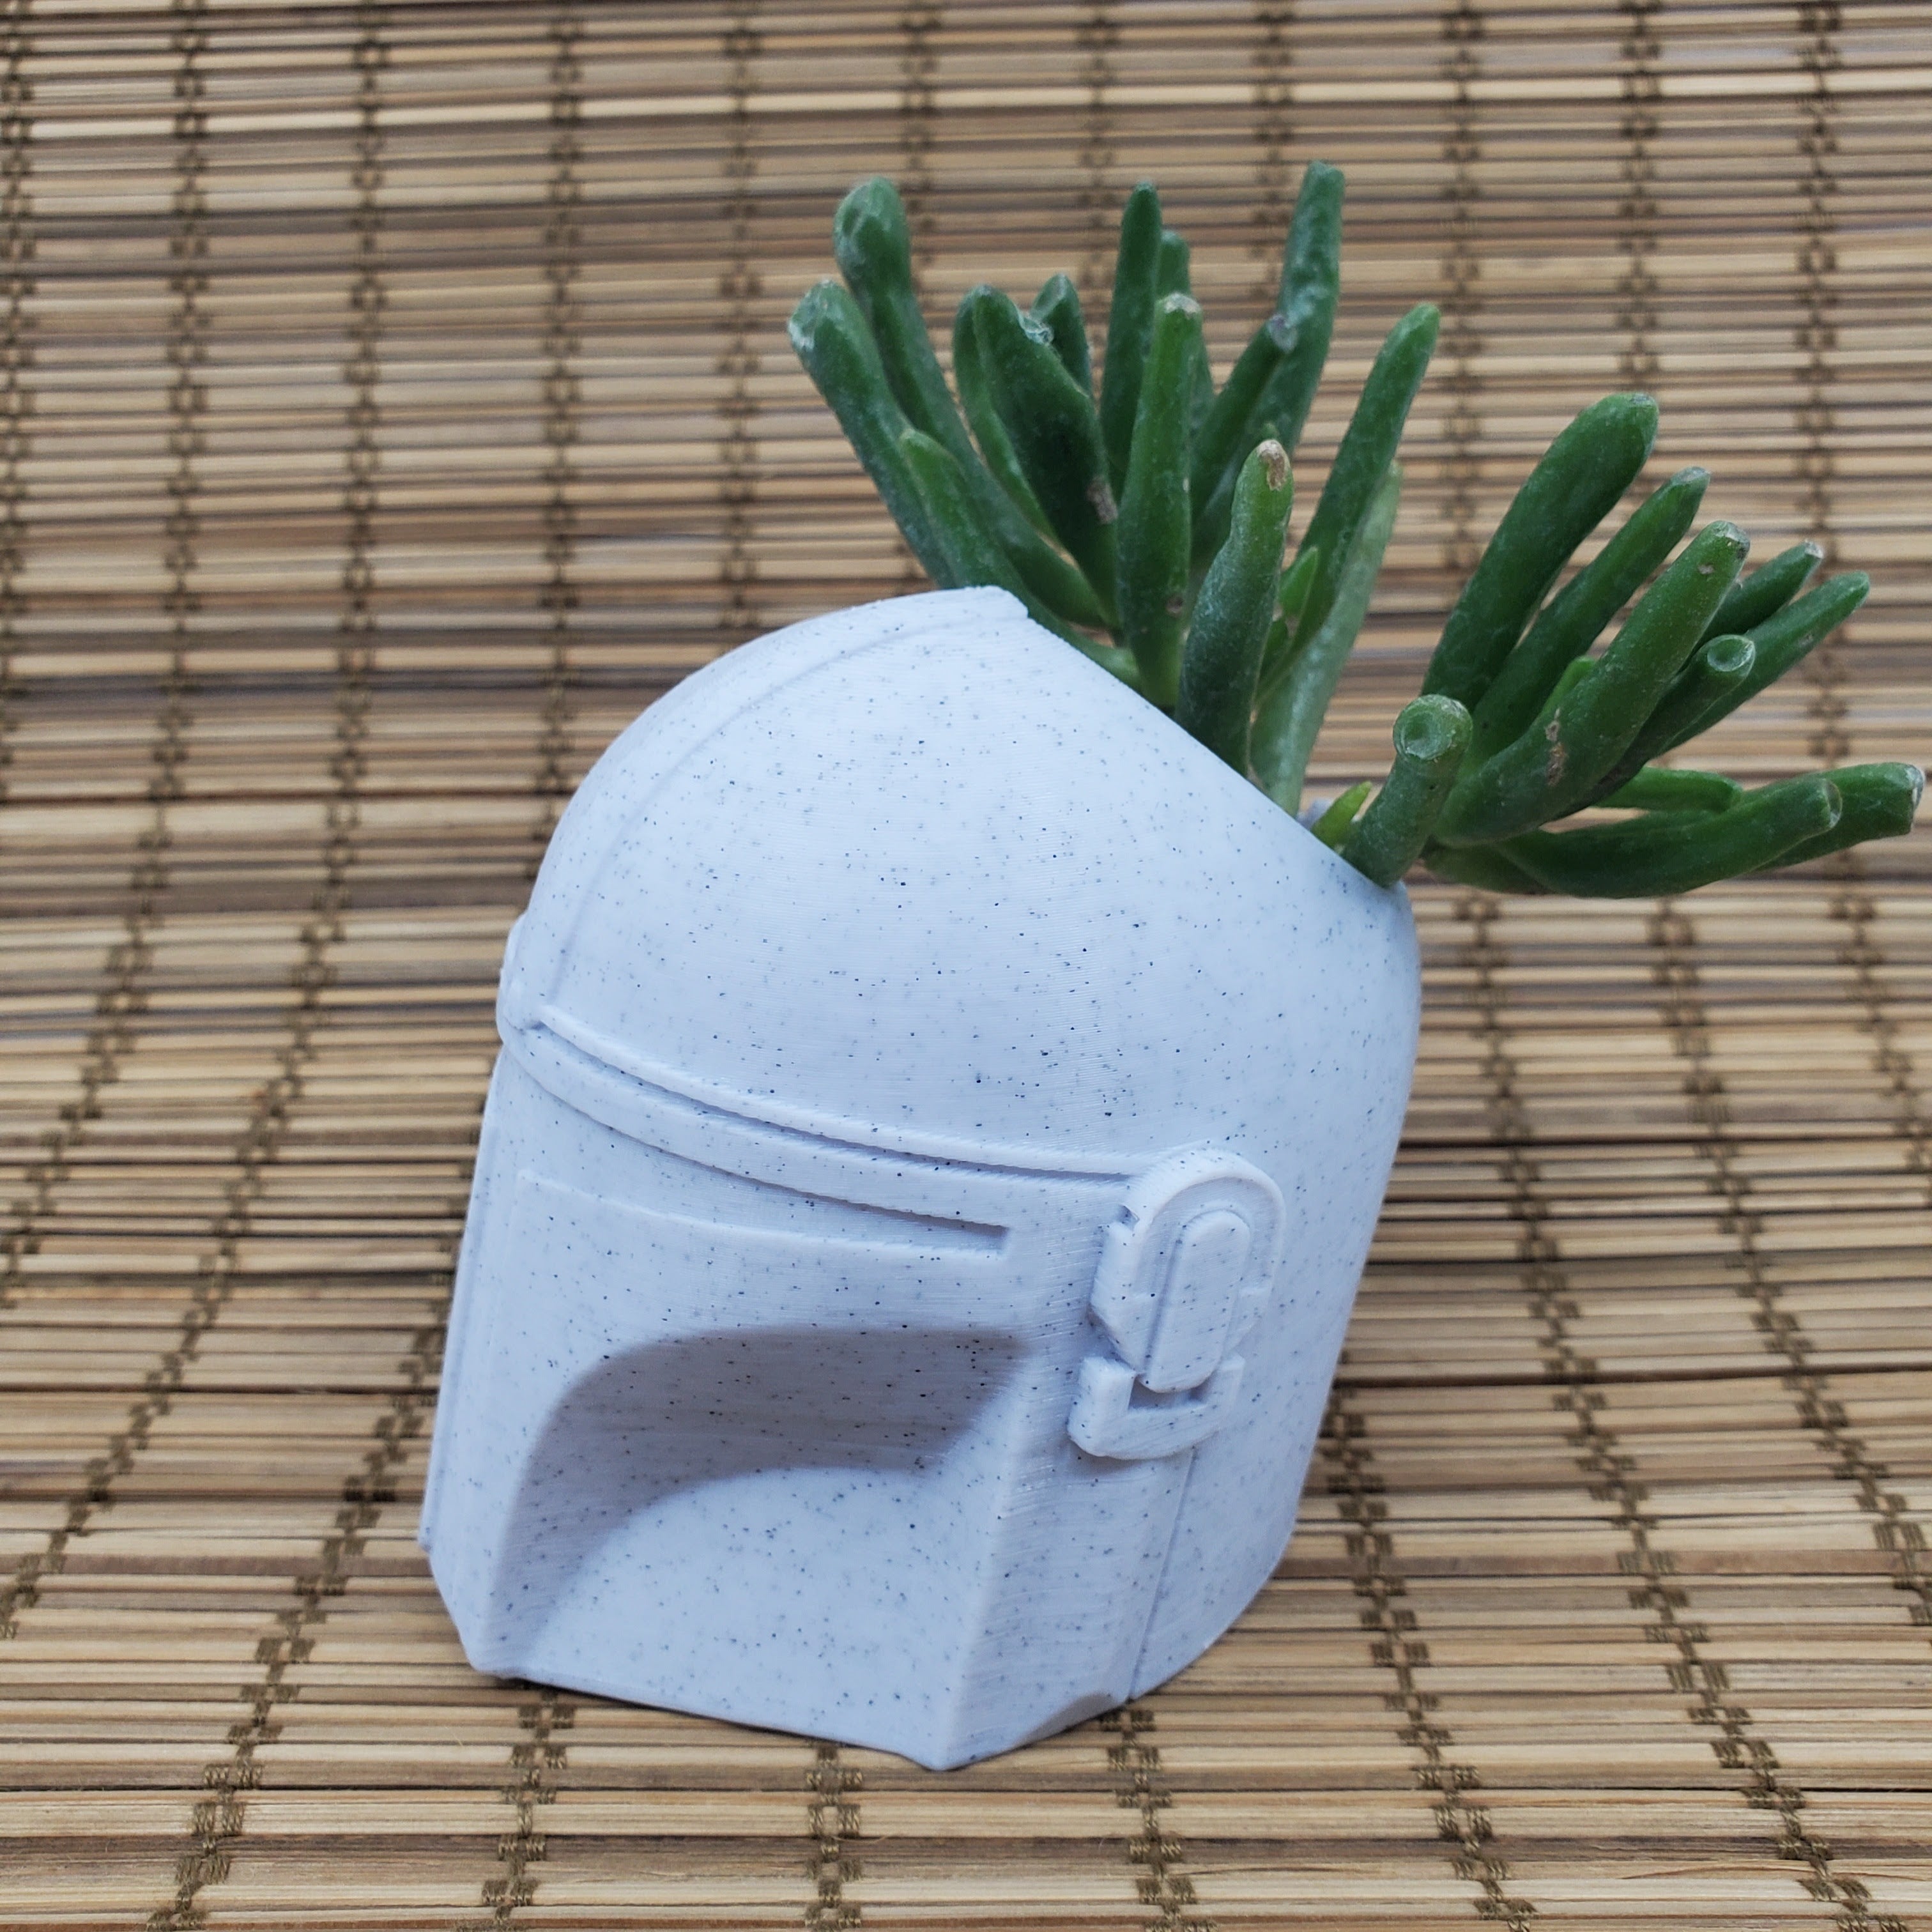 Mandalorian Inspired Helmet Planter